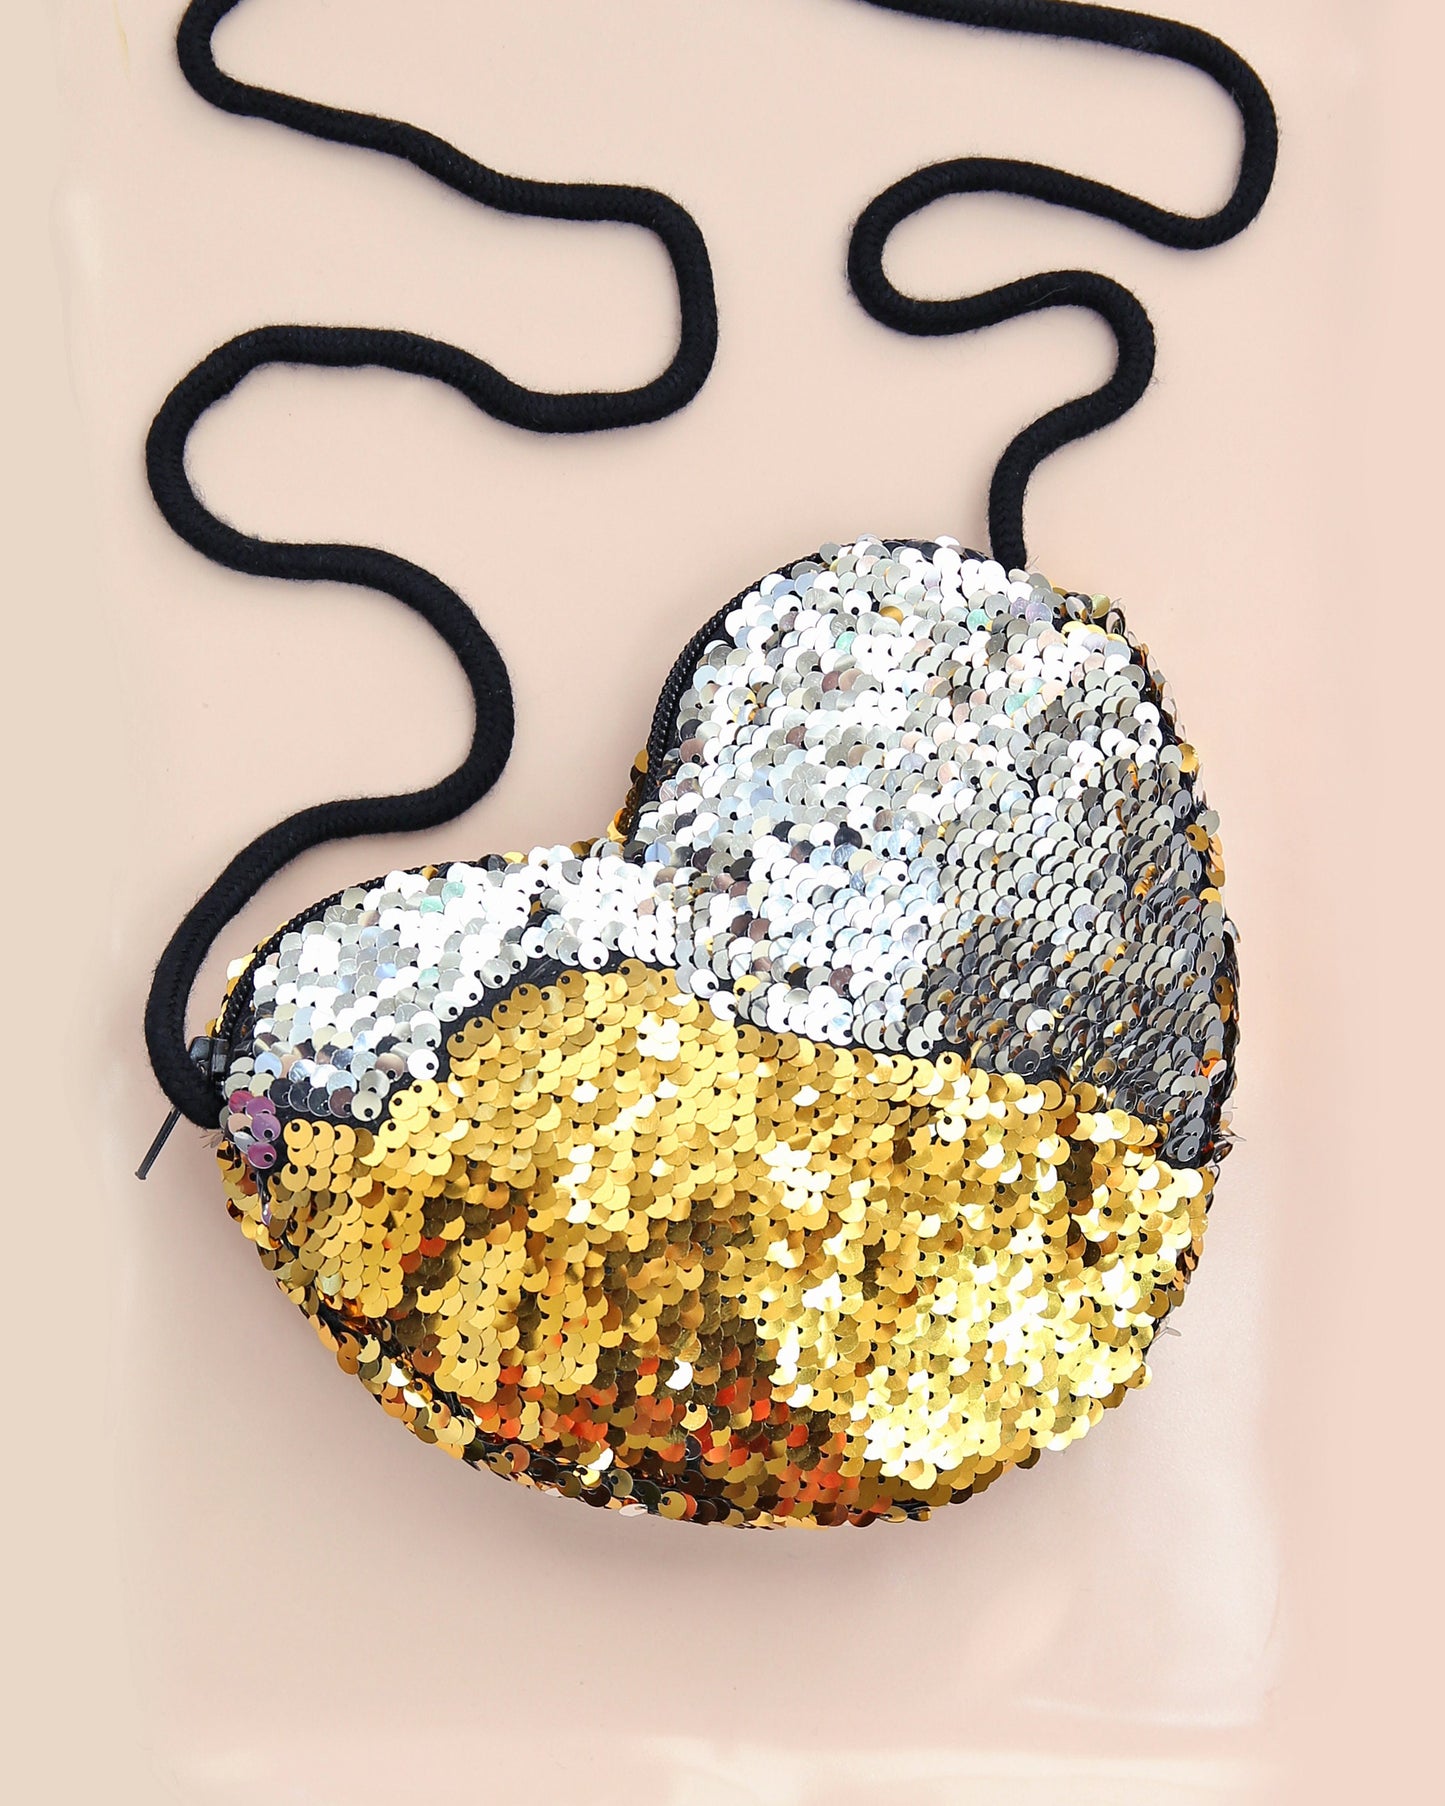 Heart Sequin Purse - Flip Sequin Heart Bag - Girls Heart Purse - SIlver and Gold Heart Bag